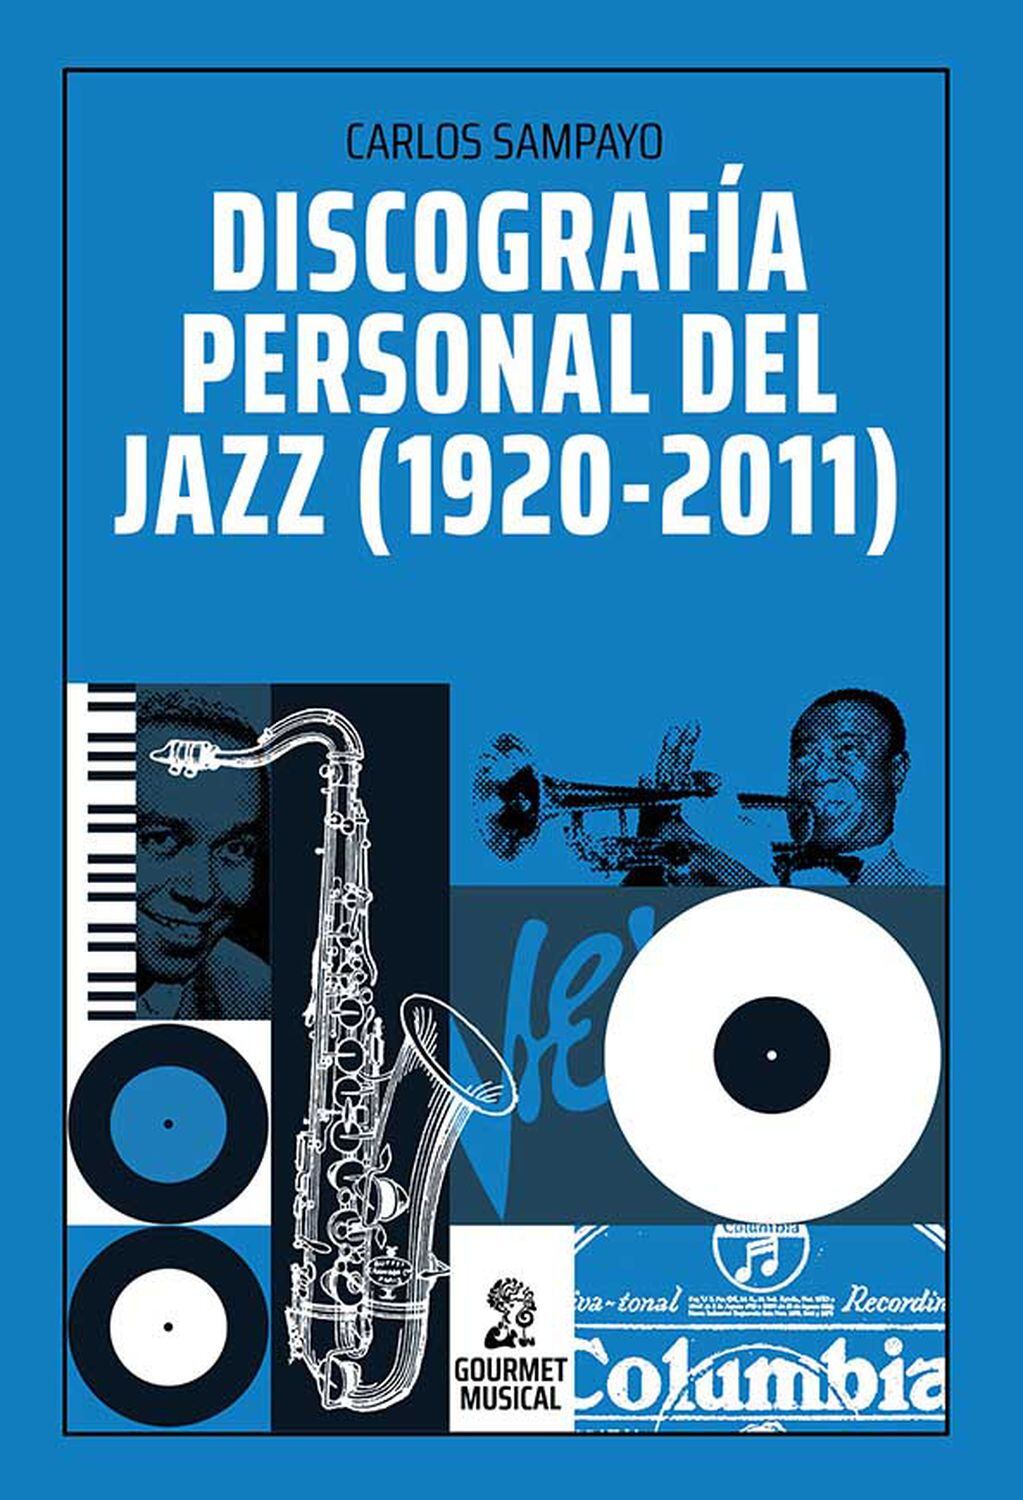 El jazz dio cabida a muchos estilos distintos, que en los años cincuenta convivieron de manera extraordinaria, con referentes como Armstrong, Parker, Gillespie, Monk, Davis, Coltrane... 